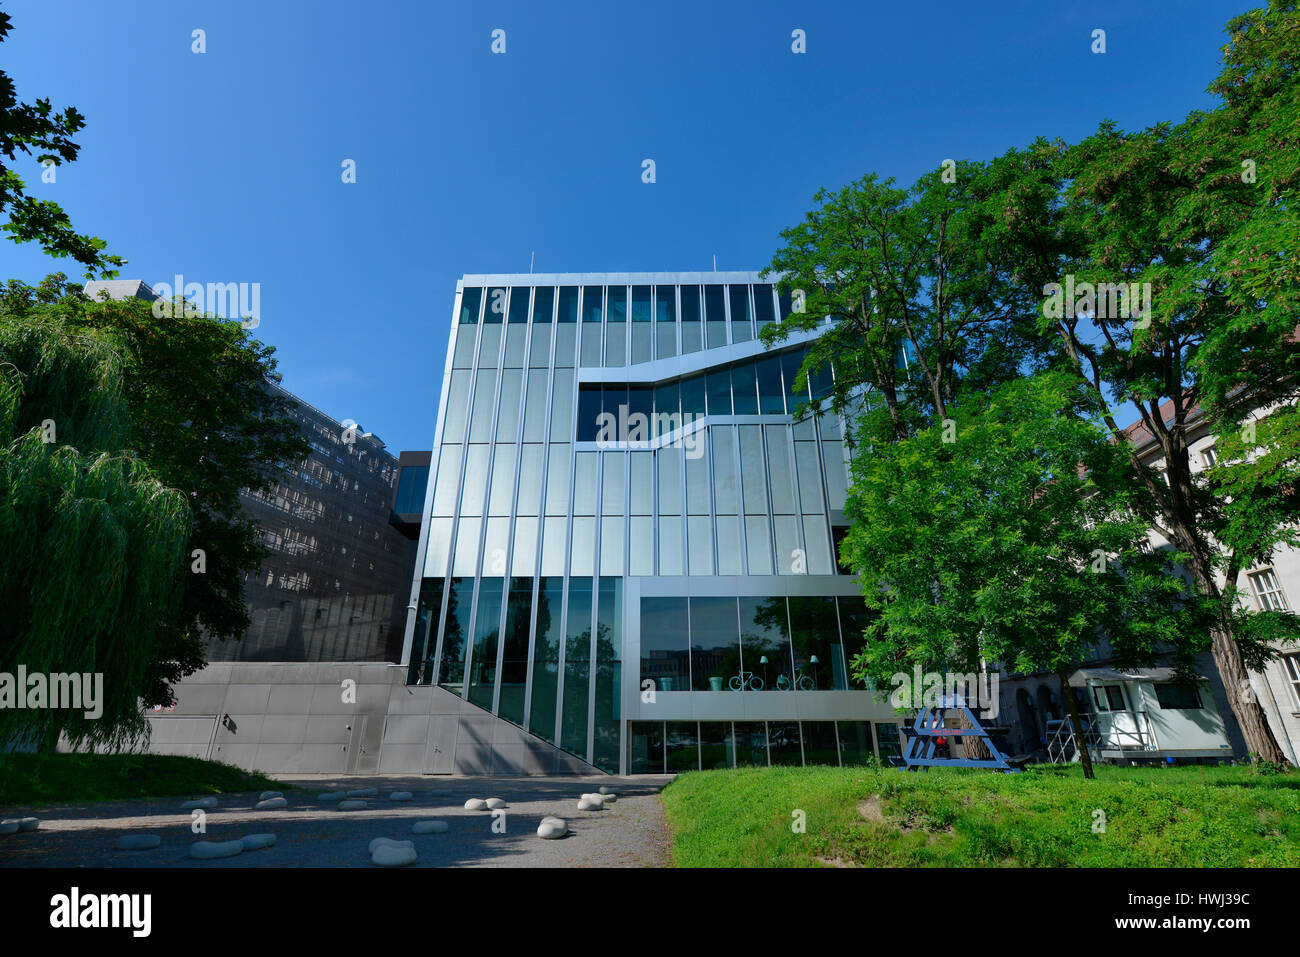 Botschaft Niederlande, Klosterstrasse, Mitte, Berlin, Deutschland Banque D'Images